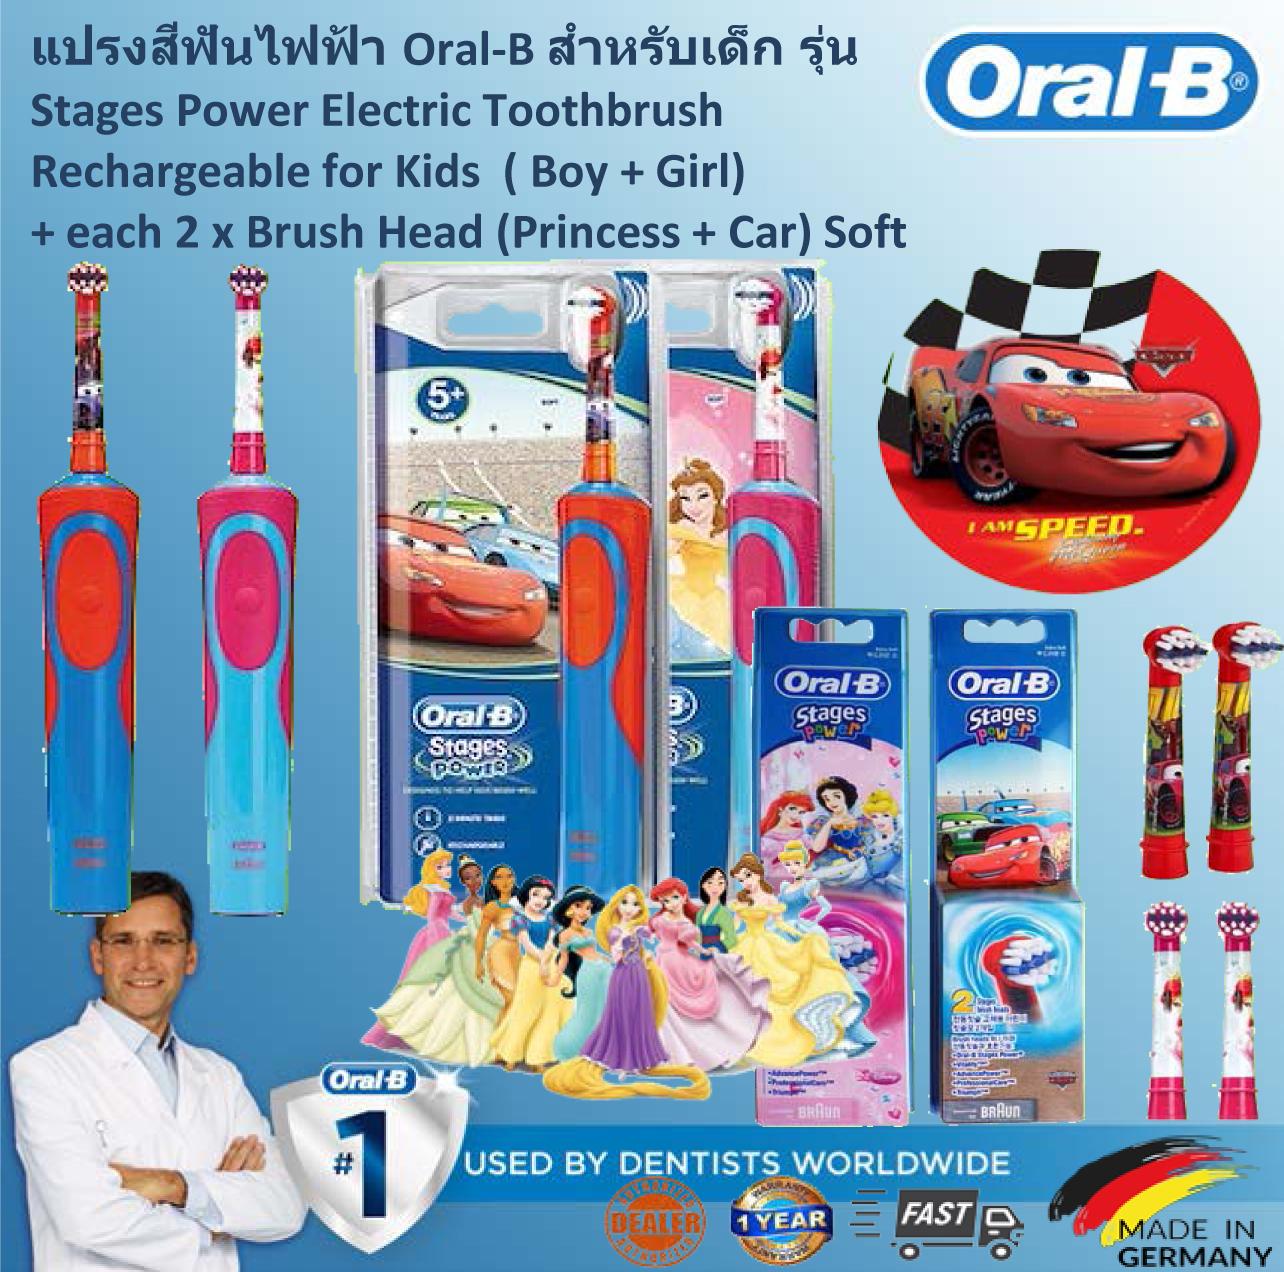 แปรงสีฟันไฟฟ้าเพื่อรอยยิ้มขาวสดใส อำนาจเจริญ Oral B Stages Power Kids Electric Toothbrush  Disney Car  Princess  แปรงสีฟันไฟฟ้าสำหรับเด็ก Oral B Stages รุ่น Disney Car   Princess   Brush